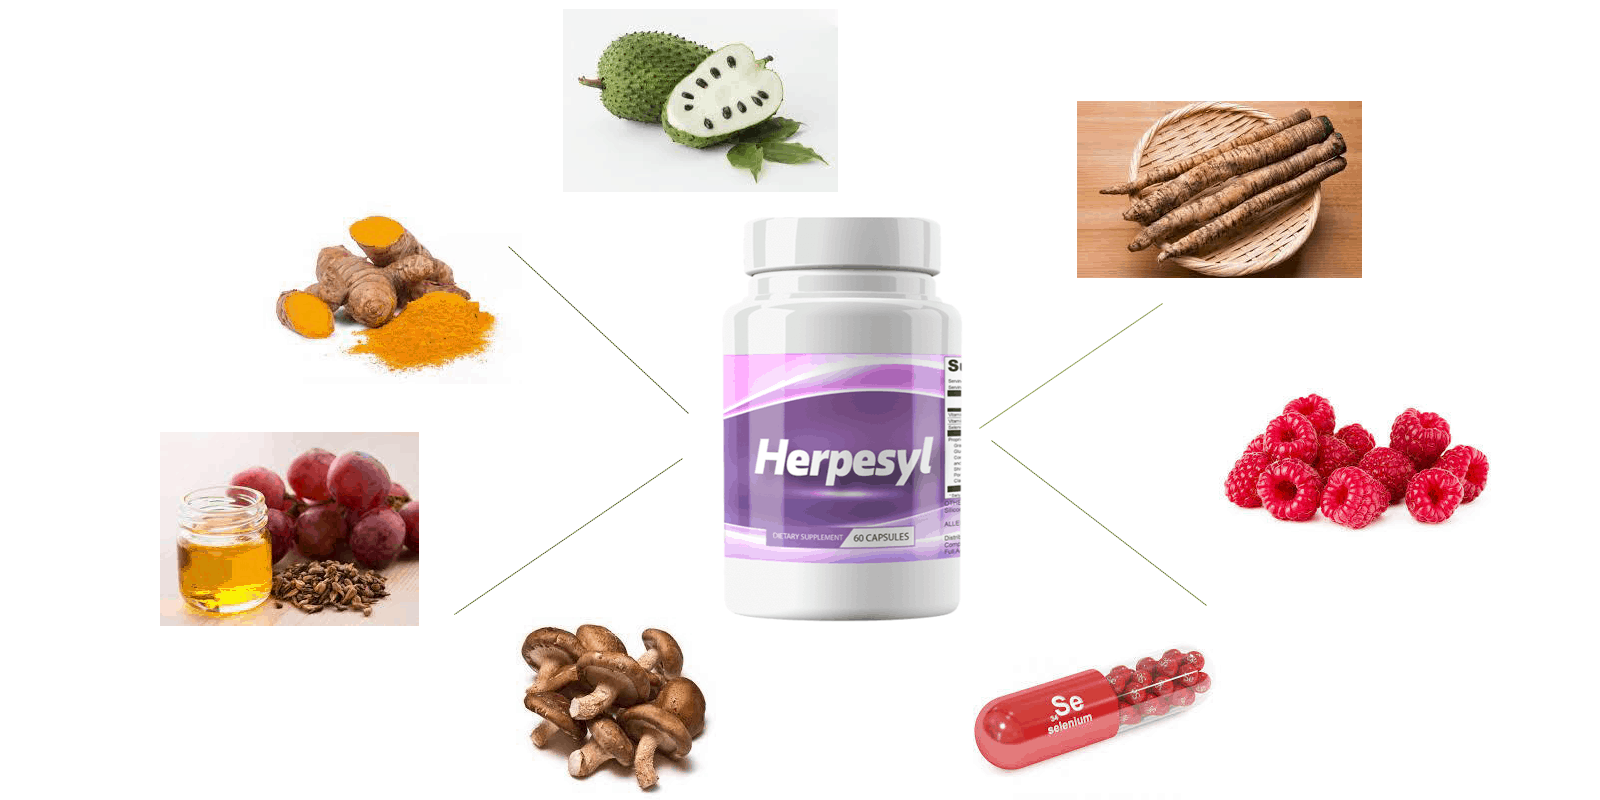 Herpesyl ingredients